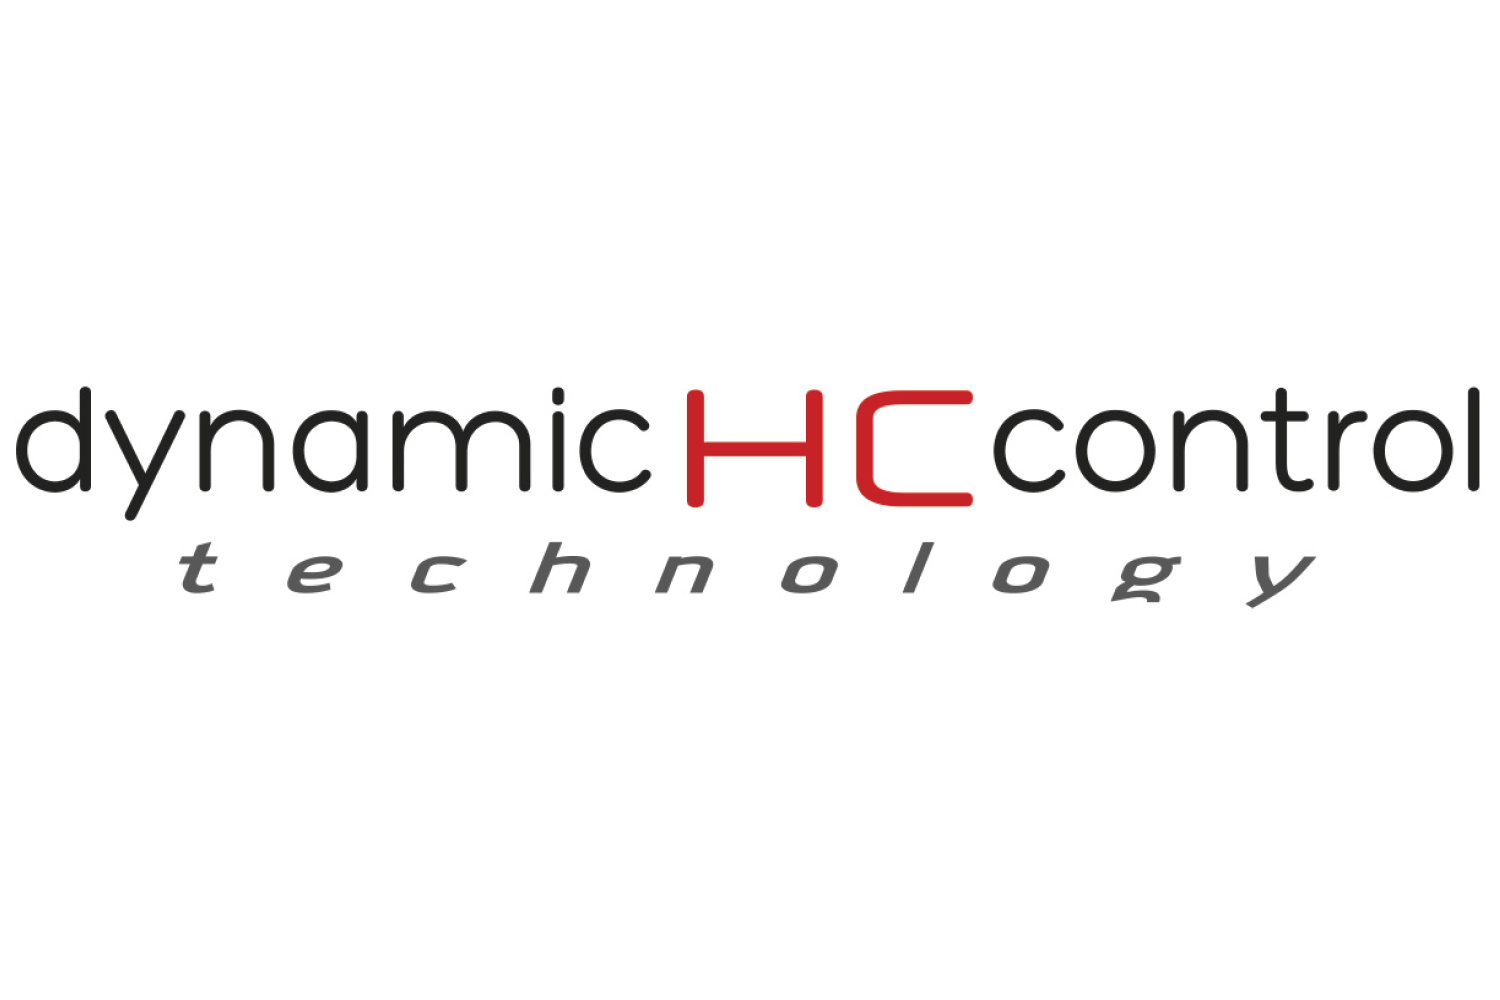 Dynamic HC Control